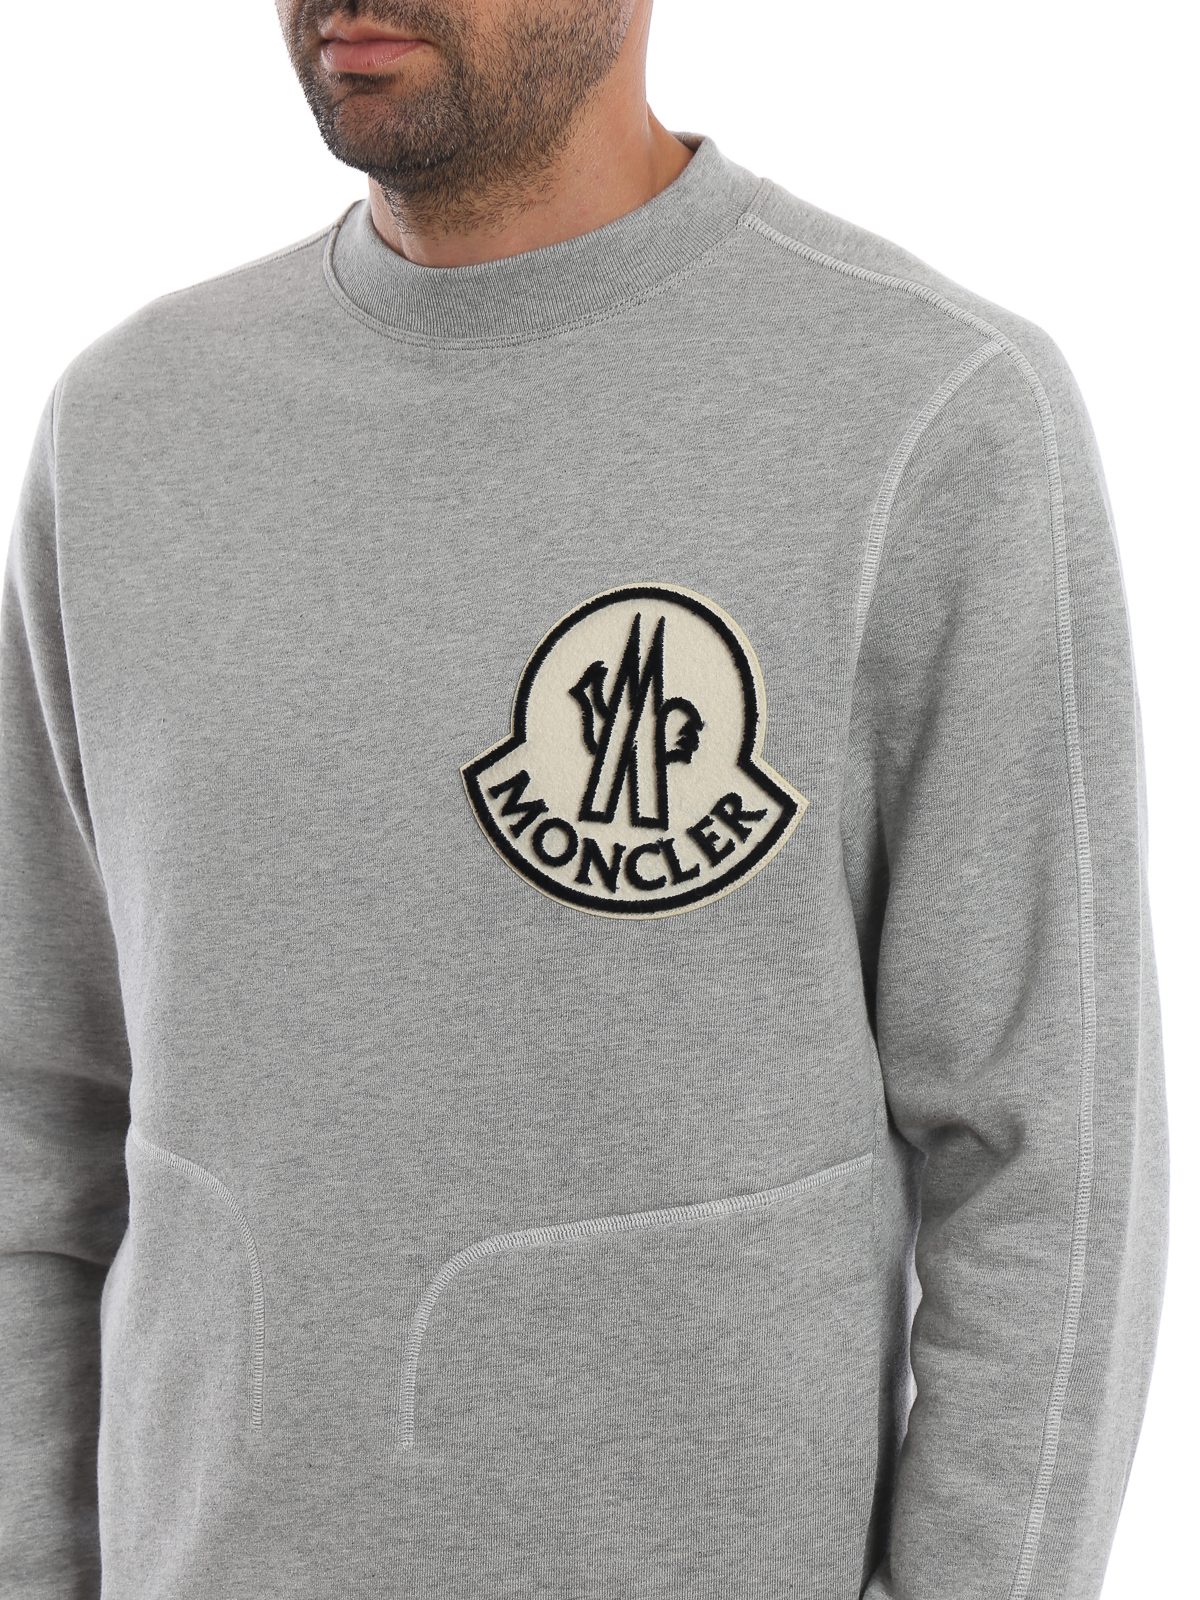 Og hold At vise kant Moncler Grey Sweatshirt Best Sale, SAVE 48% - raptorunderlayment.com